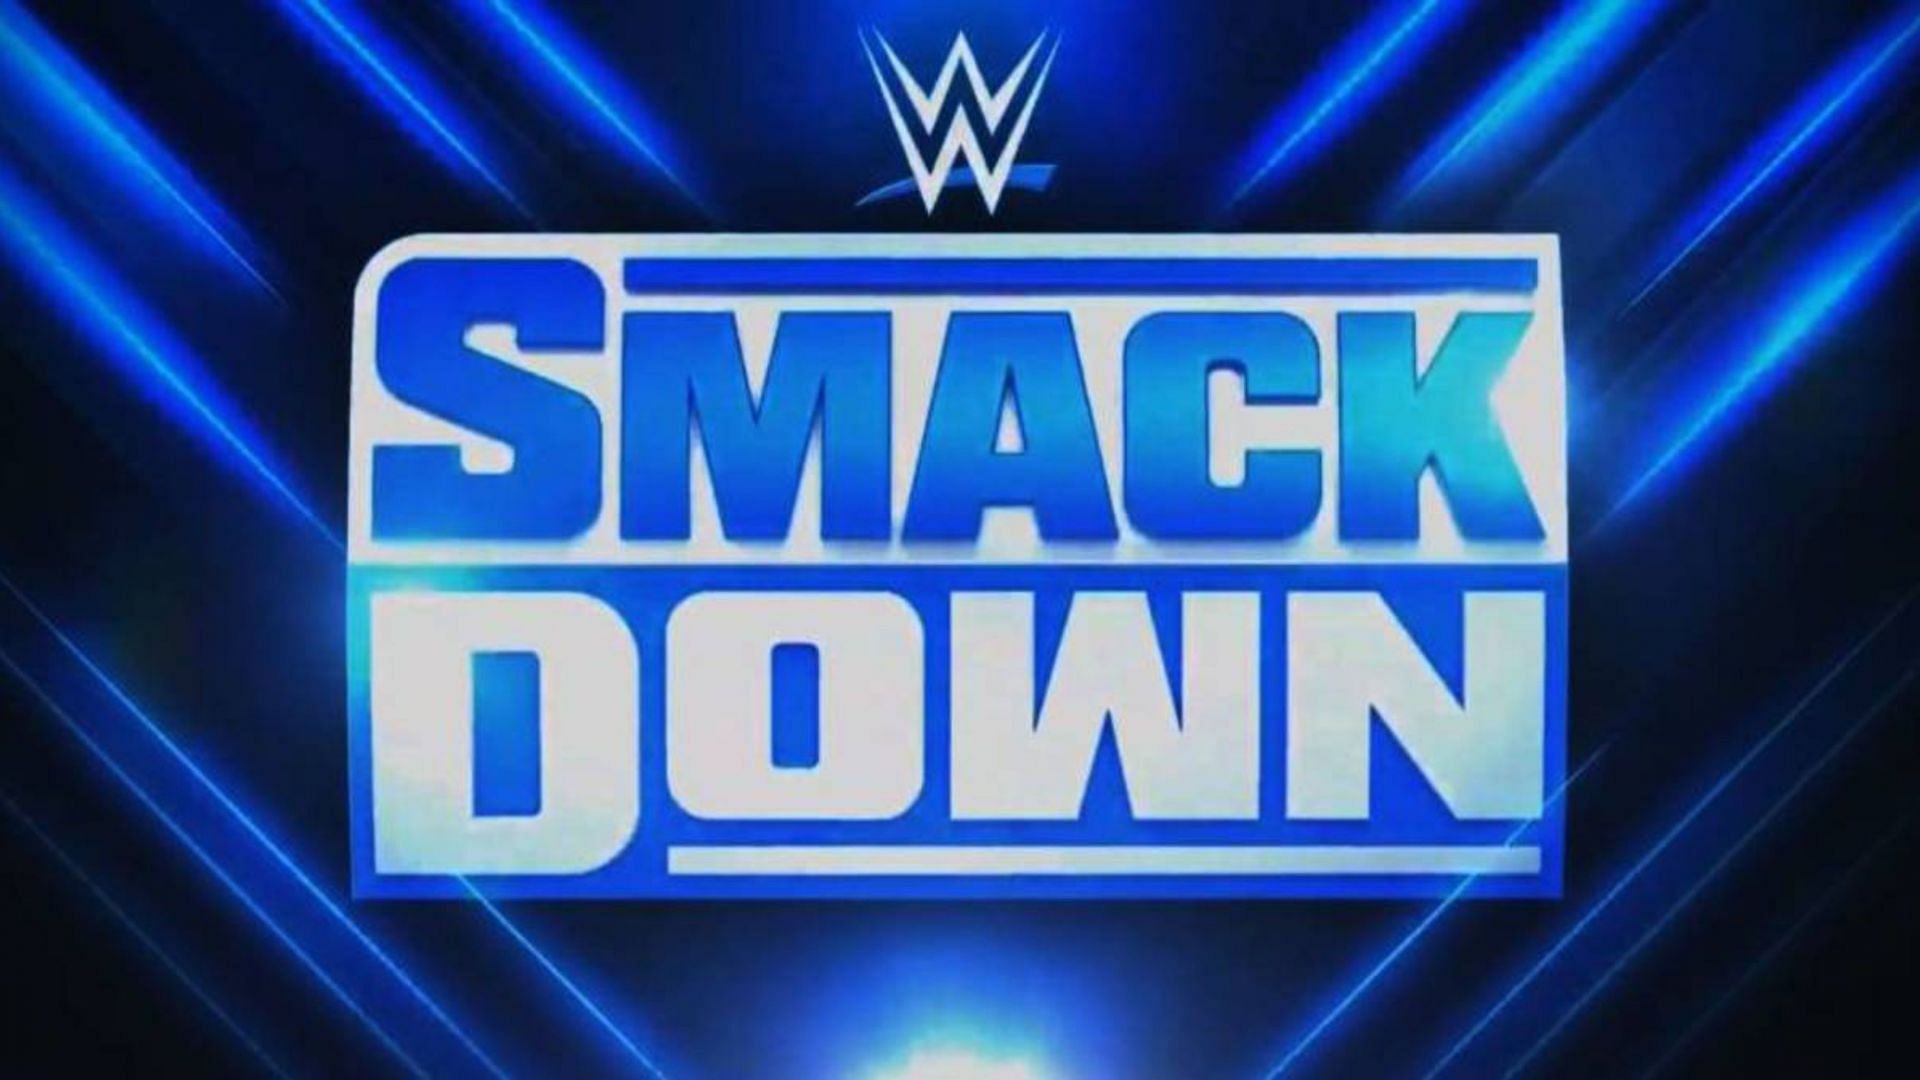 Shinsuke Nakamura recently returned to action on WWE SmackDown